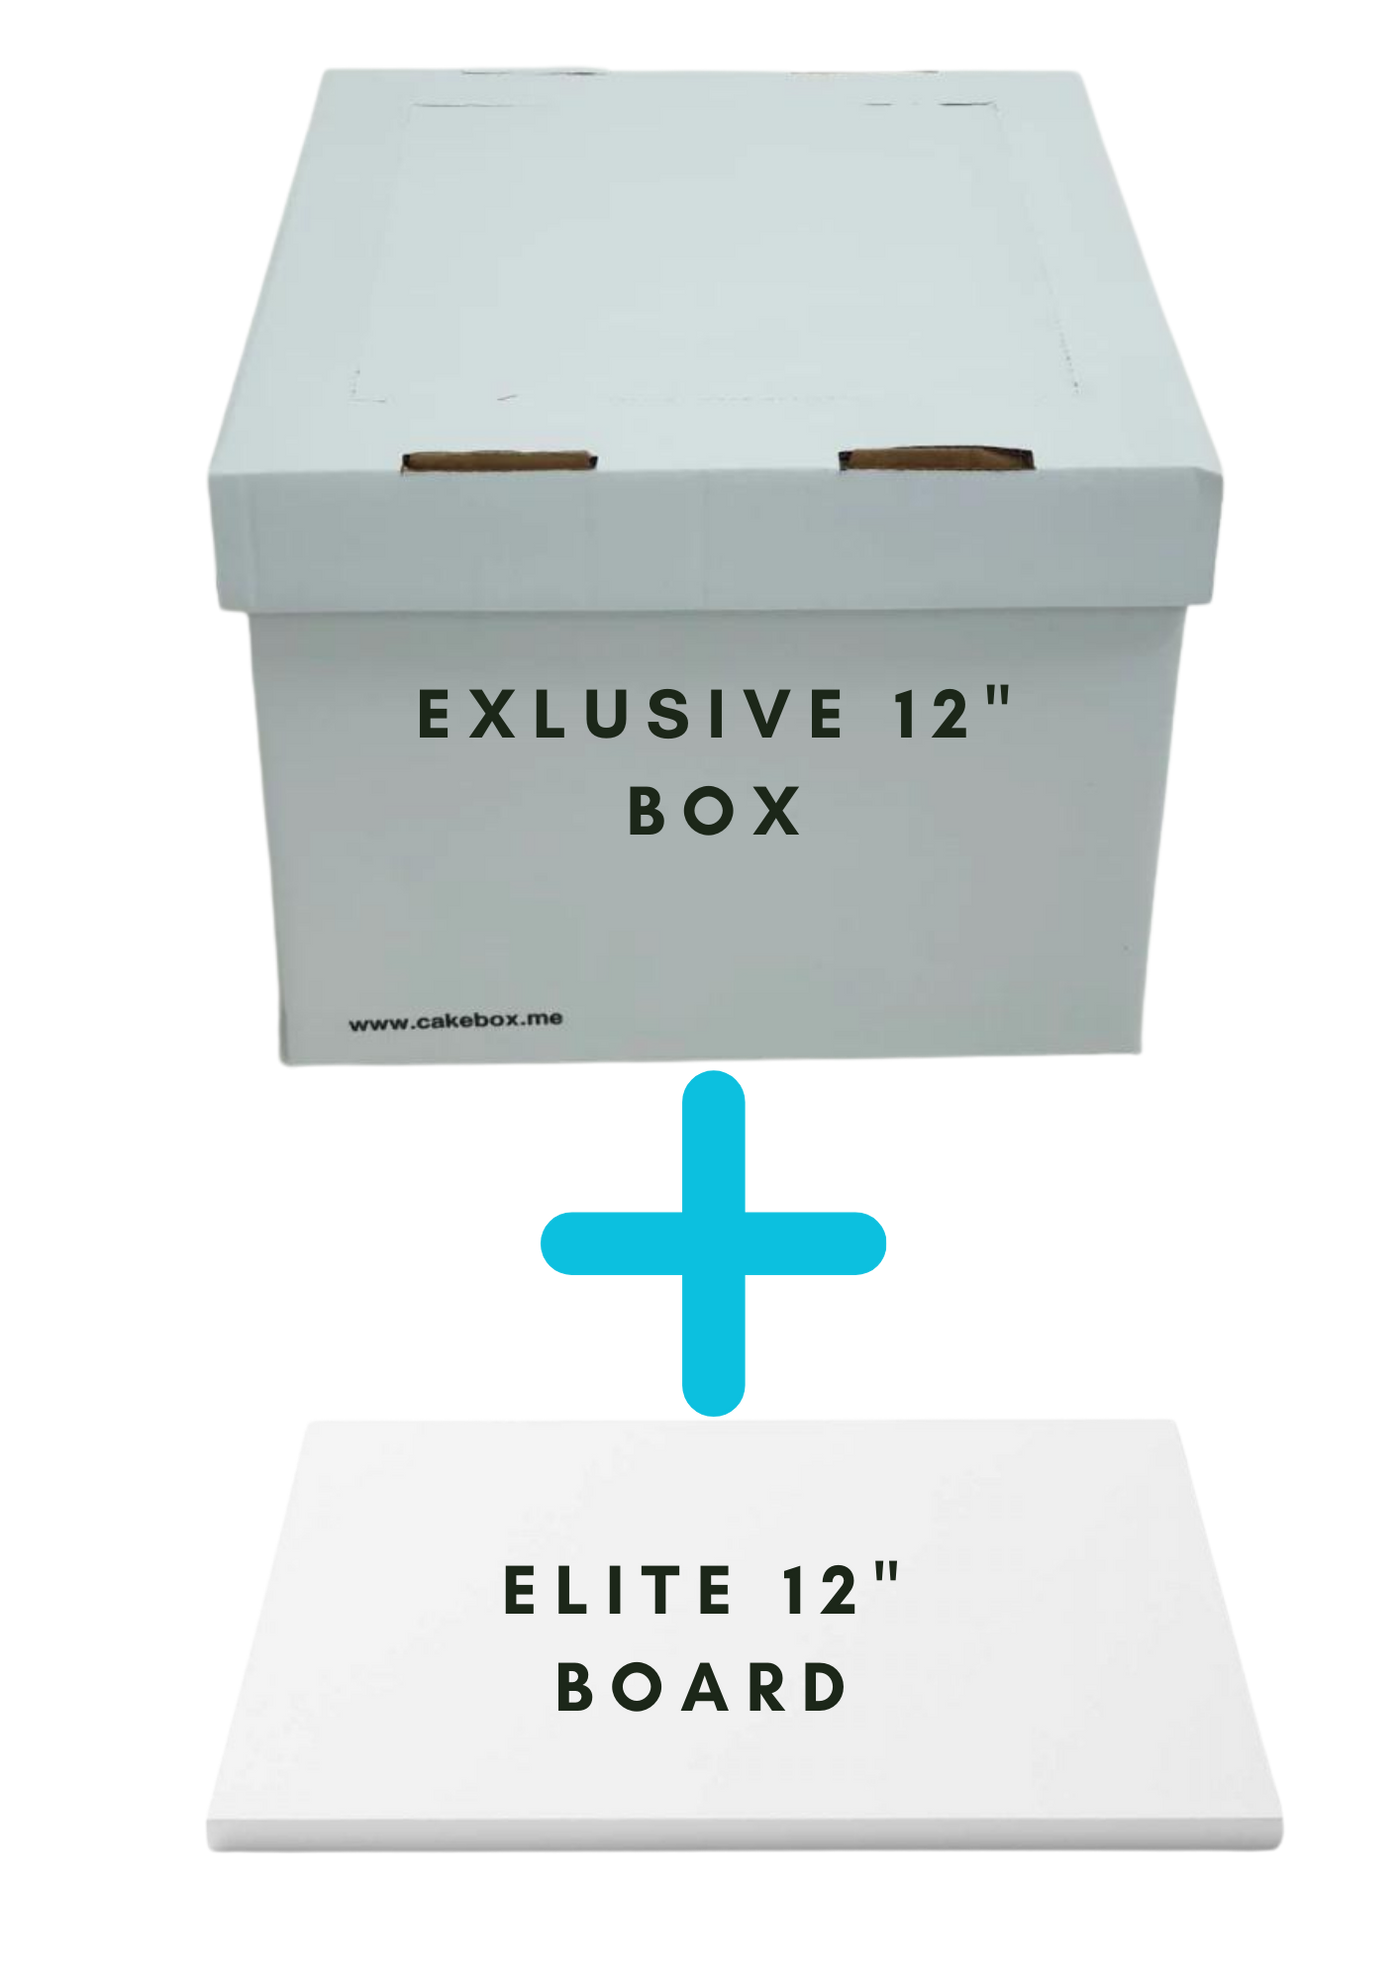 EXCLUSIVE! 12" Cake Box + Elite 12" Board combo